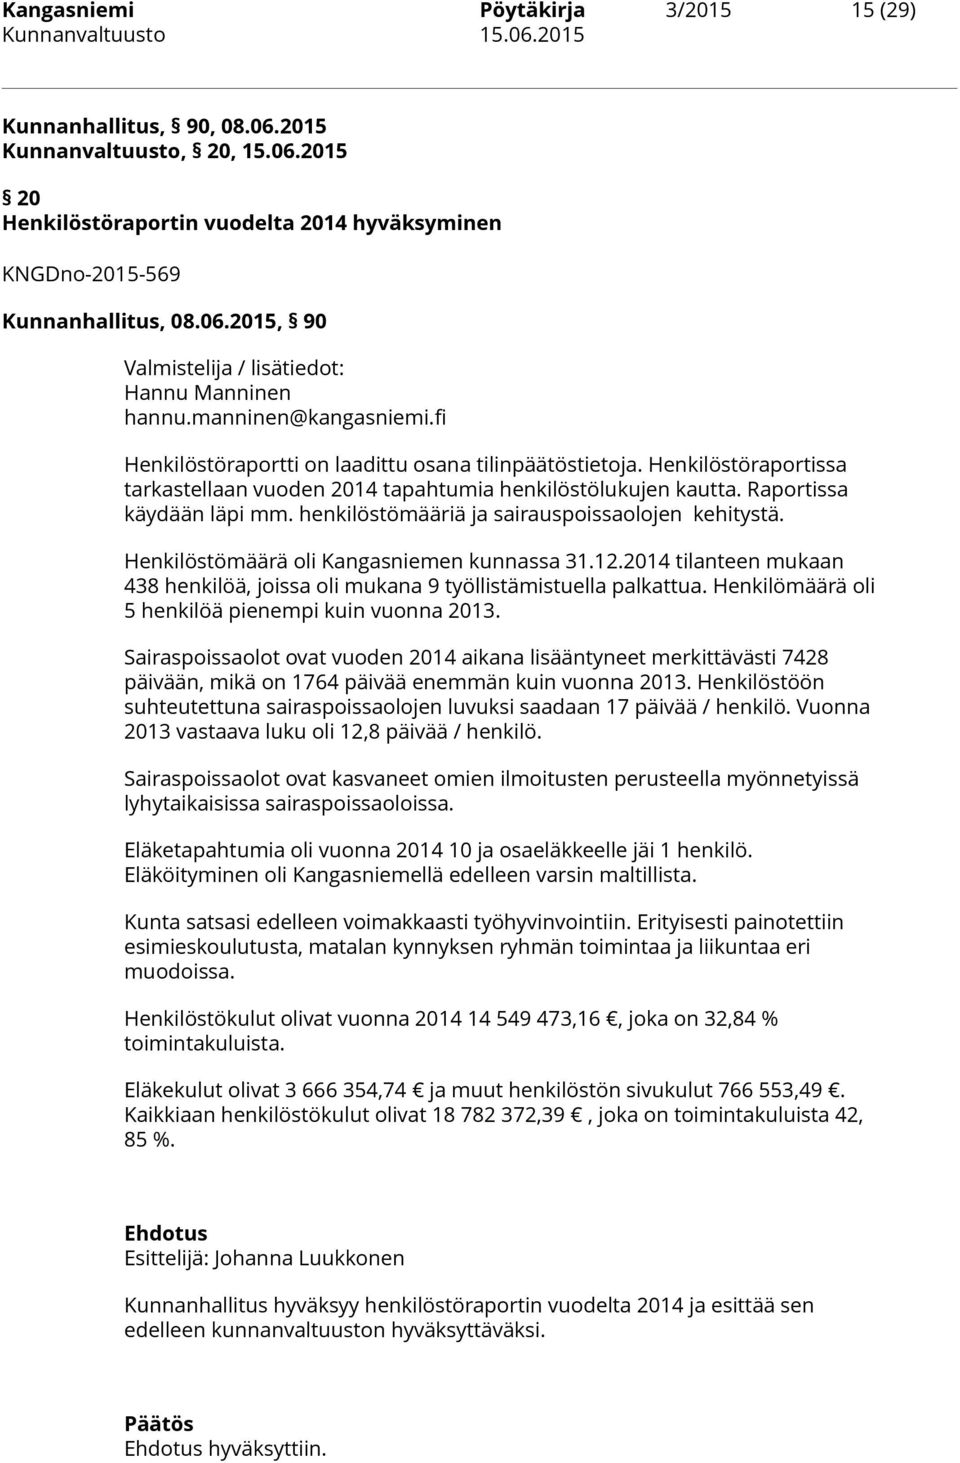 henkilöstömääriä ja sairauspoissaolojen kehitystä. Henkilöstömäärä oli Kangasniemen kunnassa 31.12.2014 tilanteen mukaan 438 henkilöä, joissa oli mukana 9 työllistämistuella palkattua.